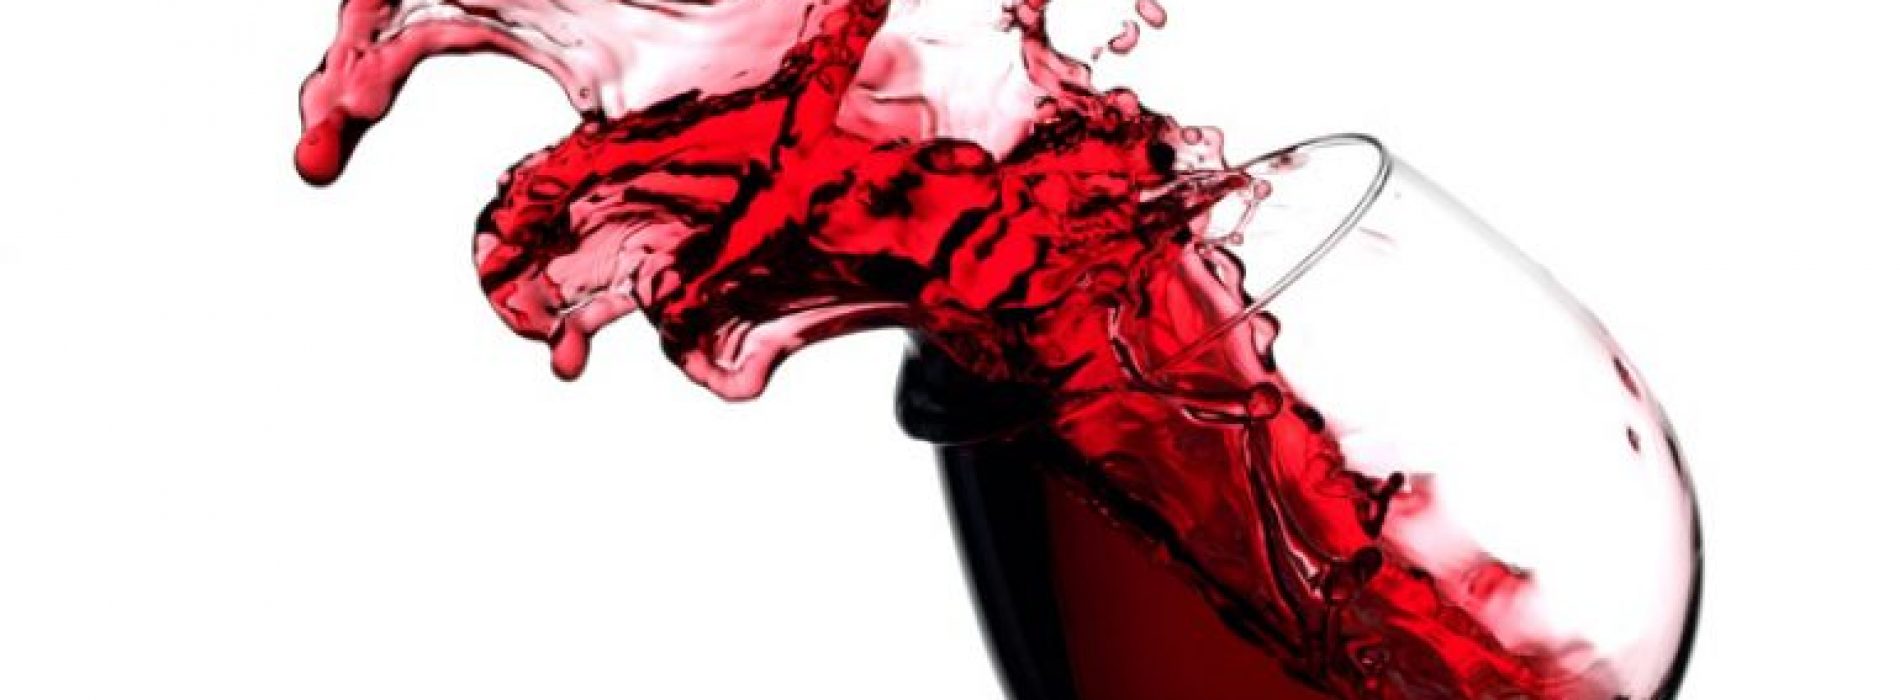 Rode wijn remt uitzaaiing borstkanker